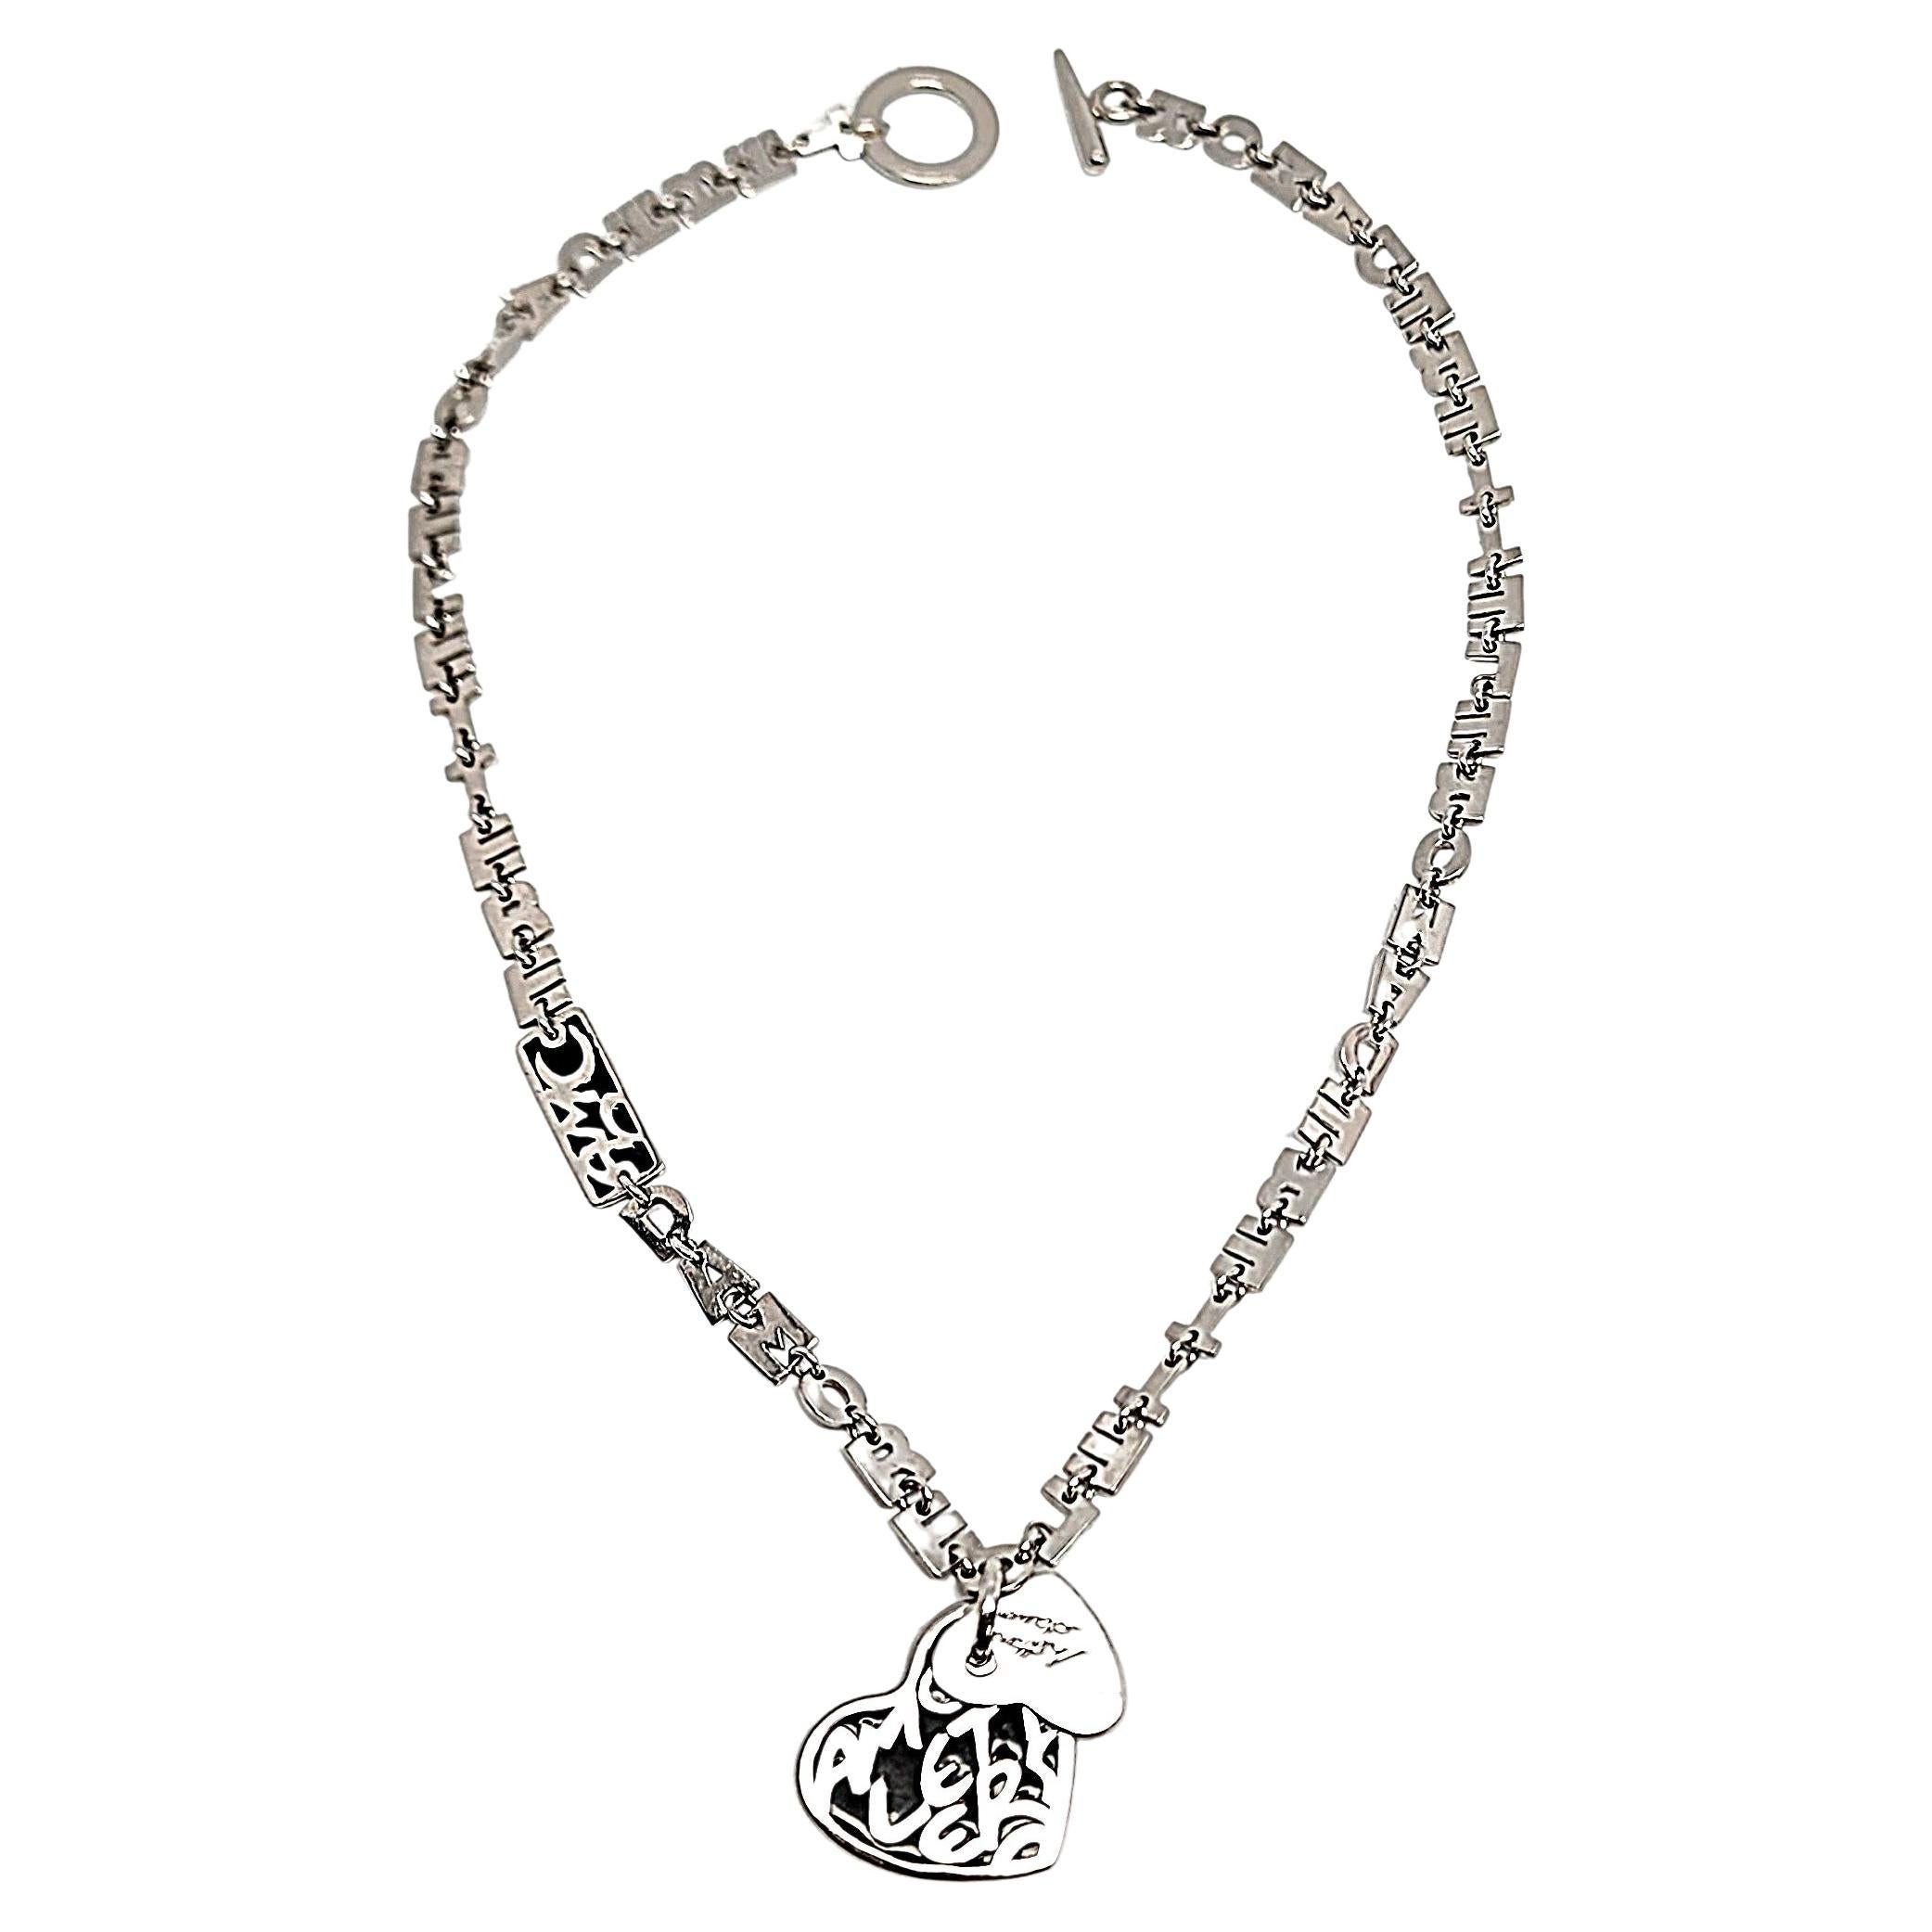 Designer LP 925 Sterling Silver Lettere D'Amore Love Letters Necklace #13372 For Sale